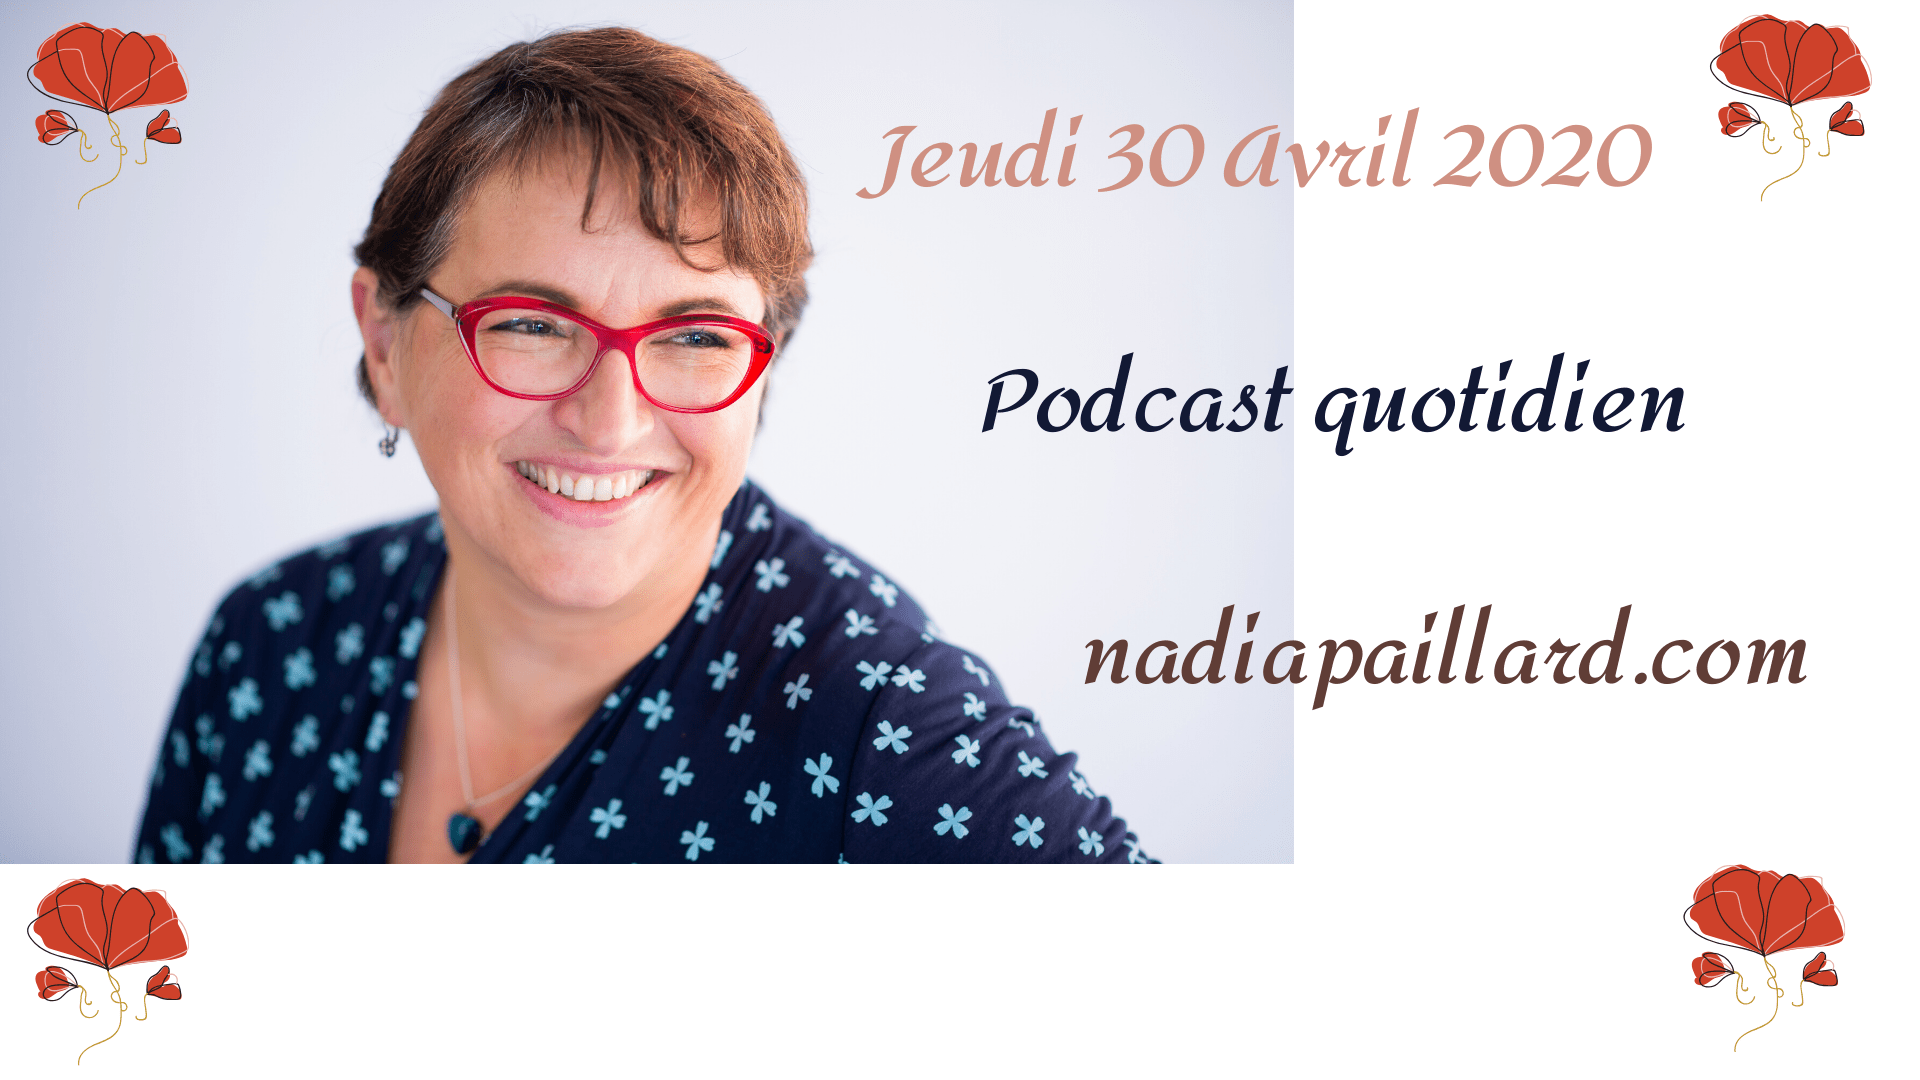 La Quotidienne du 30/04/2020, Podcast-Vidéo,Lecture du jour, Jeudi 30 Avril 2020 by Nadia PAILLARD Coach, fêtes à souhaiter, lecture de 2 extraits de livre